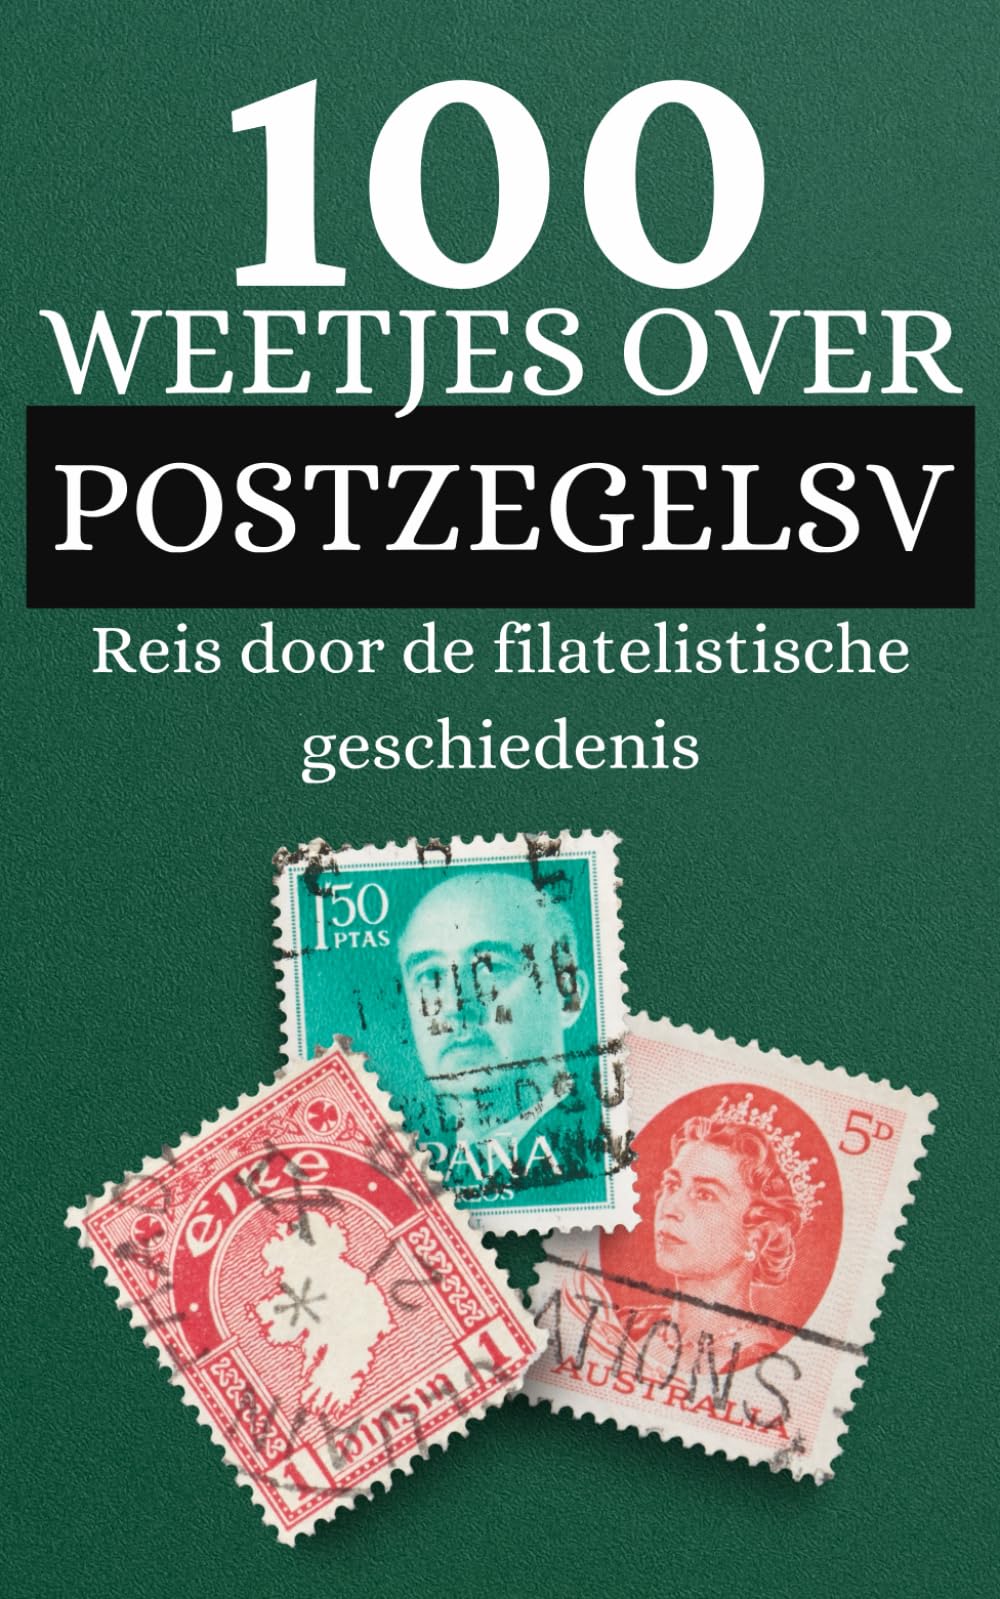 100 feiten over Postzegels: Reis door de filatelistische geschiedenis en ontdek dingen die je nog niet wist over postzegels (Dutch Edition)